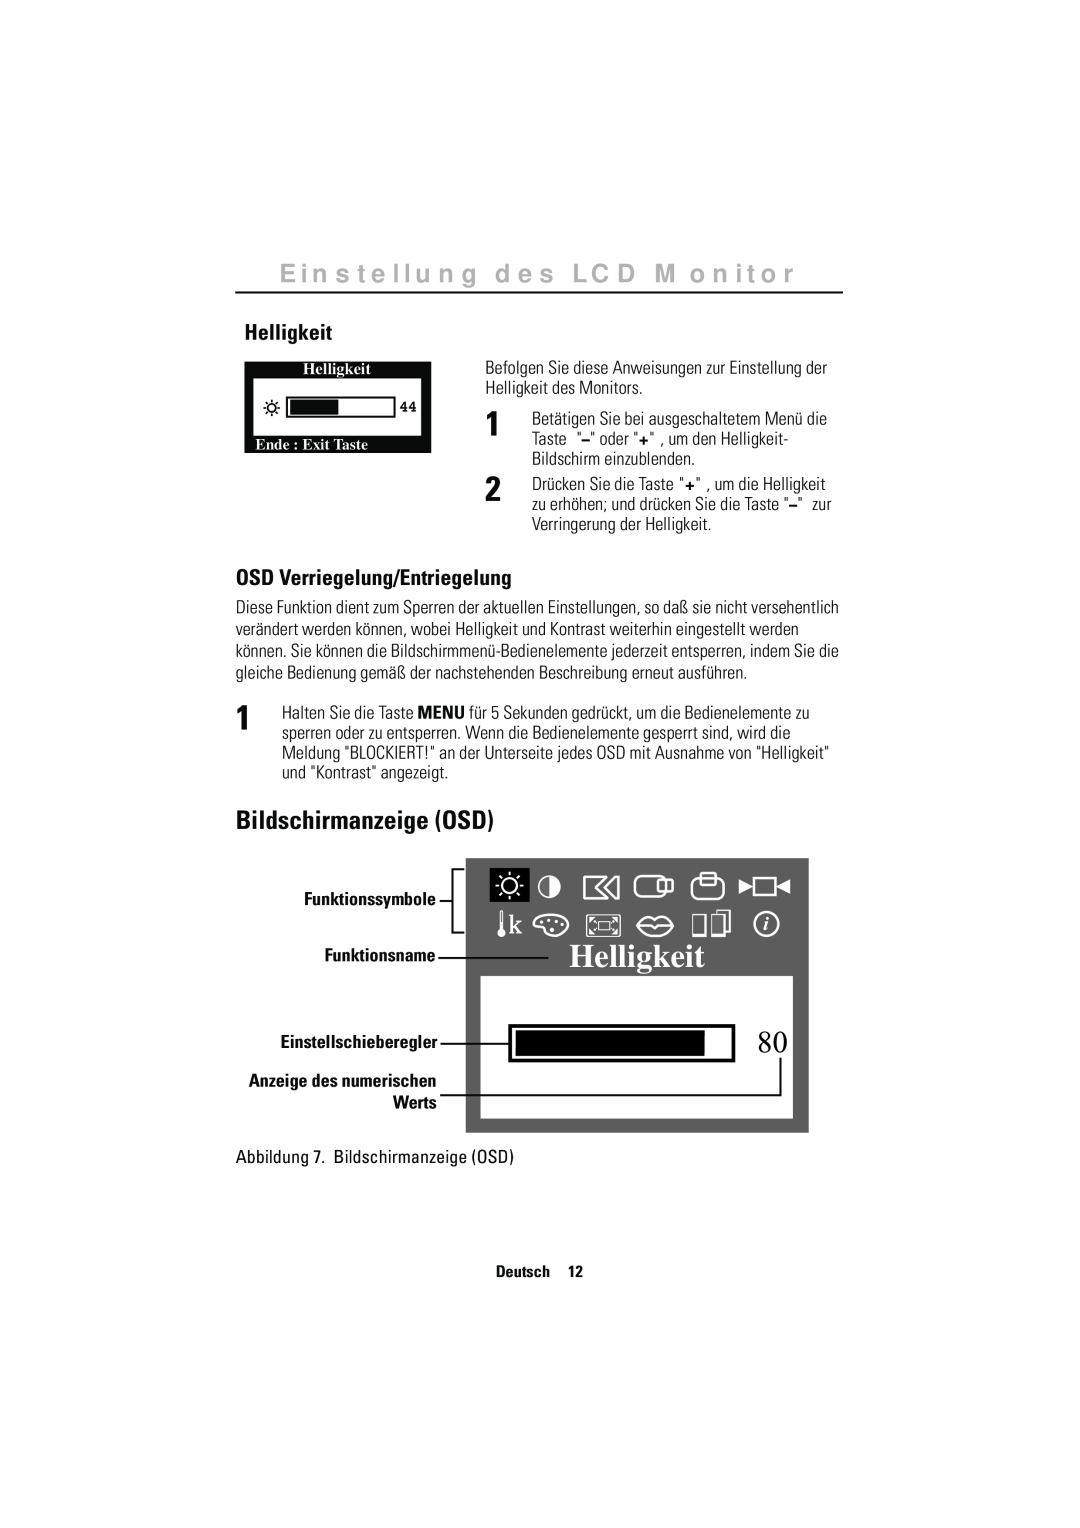 Samsung CN15MSAPS/EDC Bildschirmanzeige OSD, Helligkeit, OSD Verriegelung/Entriegelung, Funktionssymbole, Funktionsname 